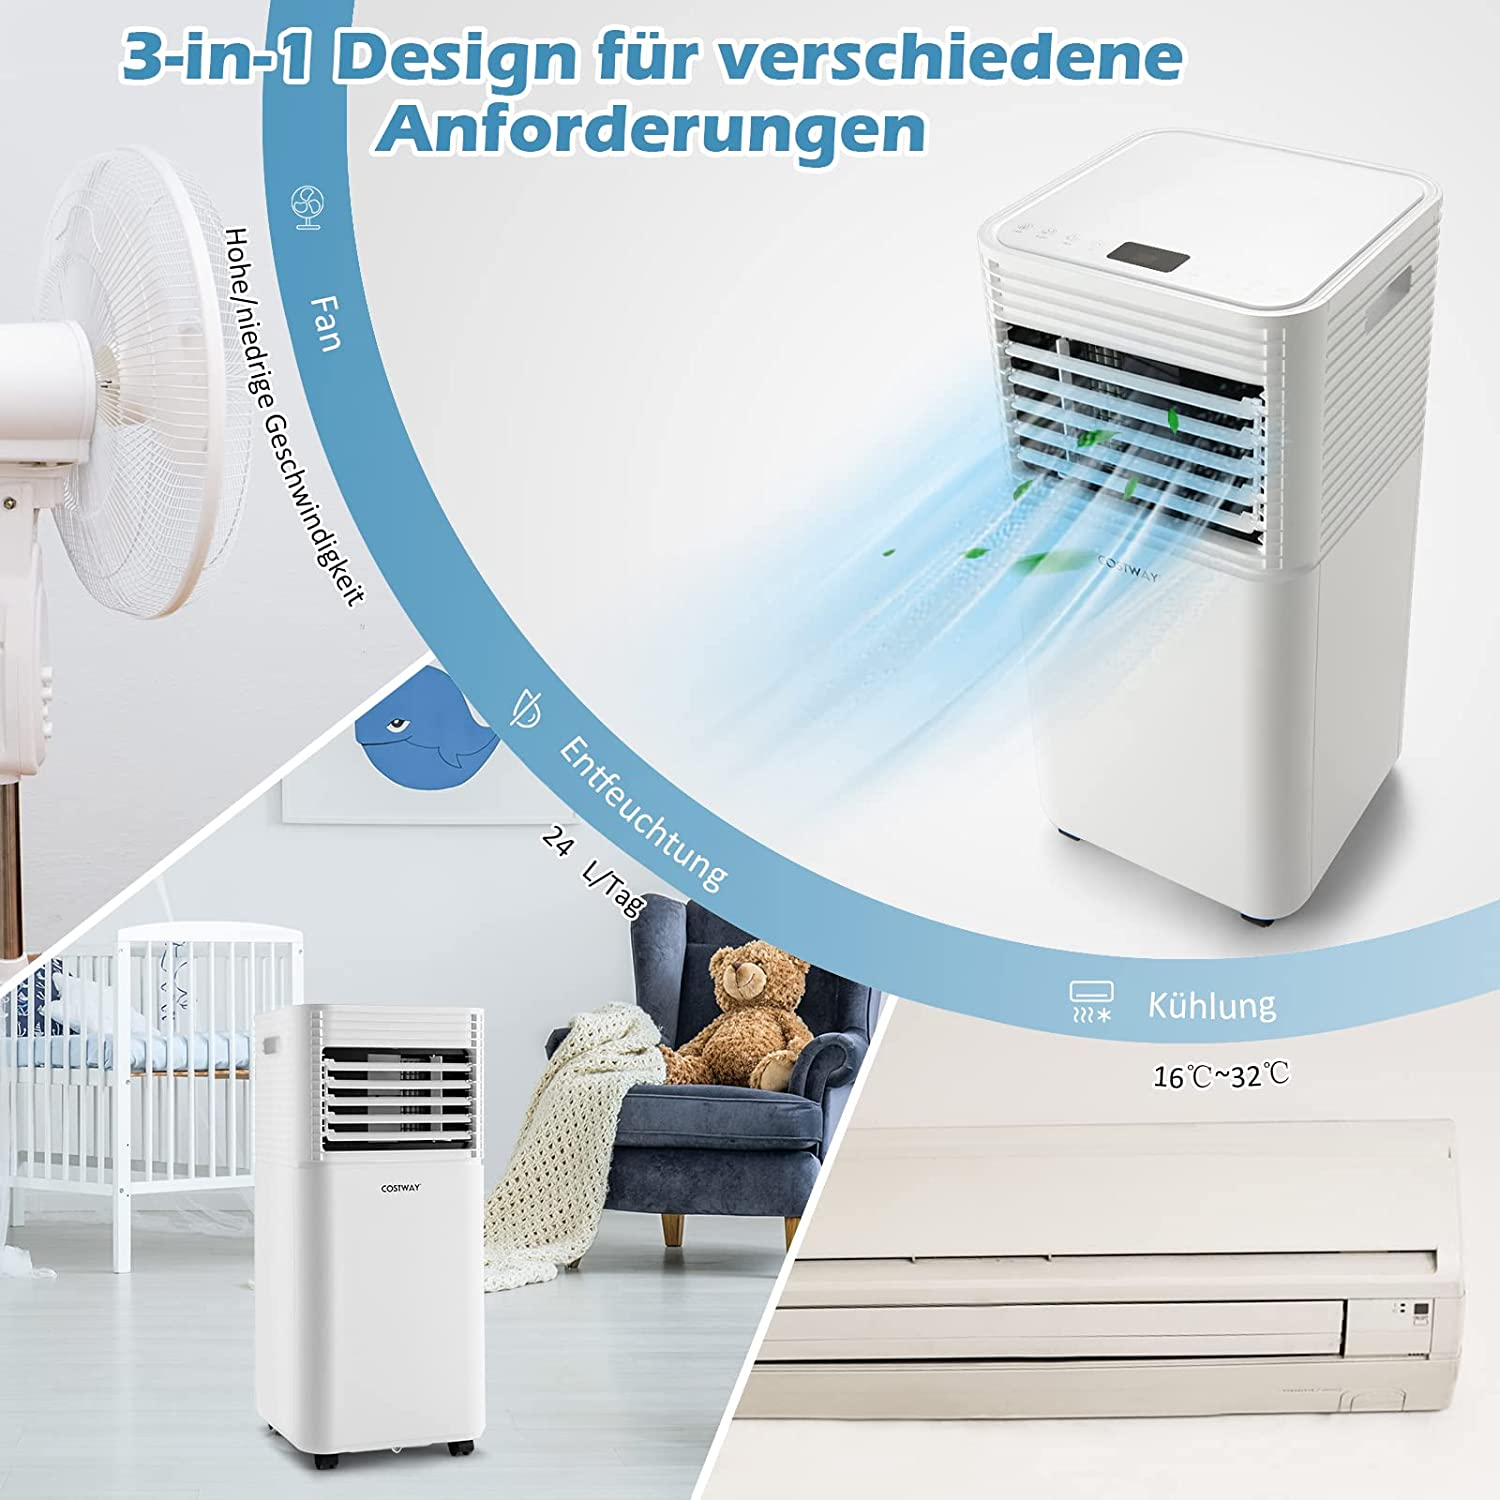 COSTWAY Klimagerät Klimaanlage Schwarz 20 (Max. m², EEK: Raumgröße: A)